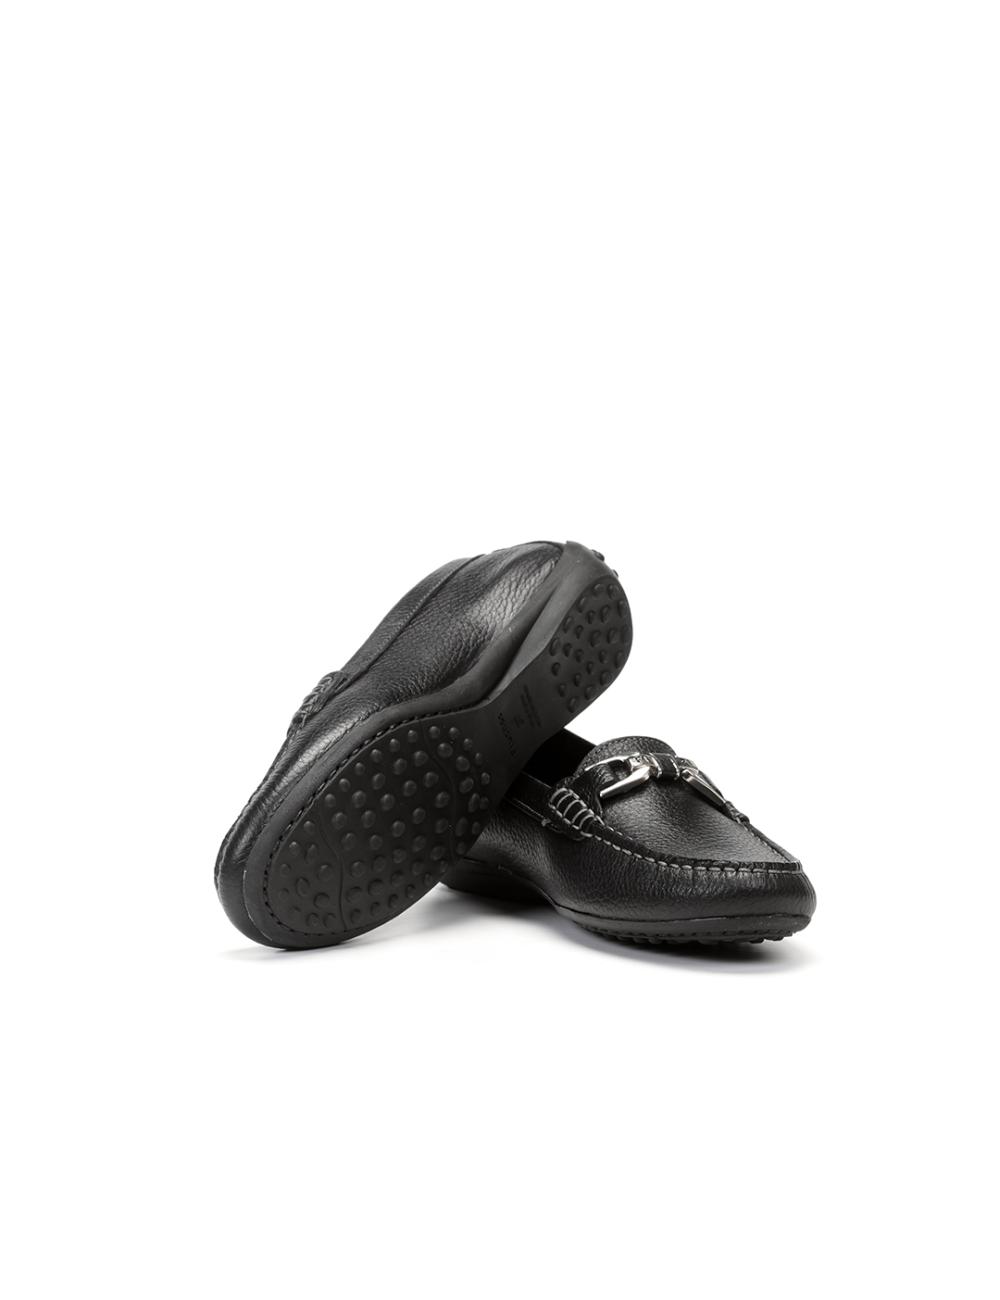 Fluchos - Zapatos mocasines mujer D-F0804